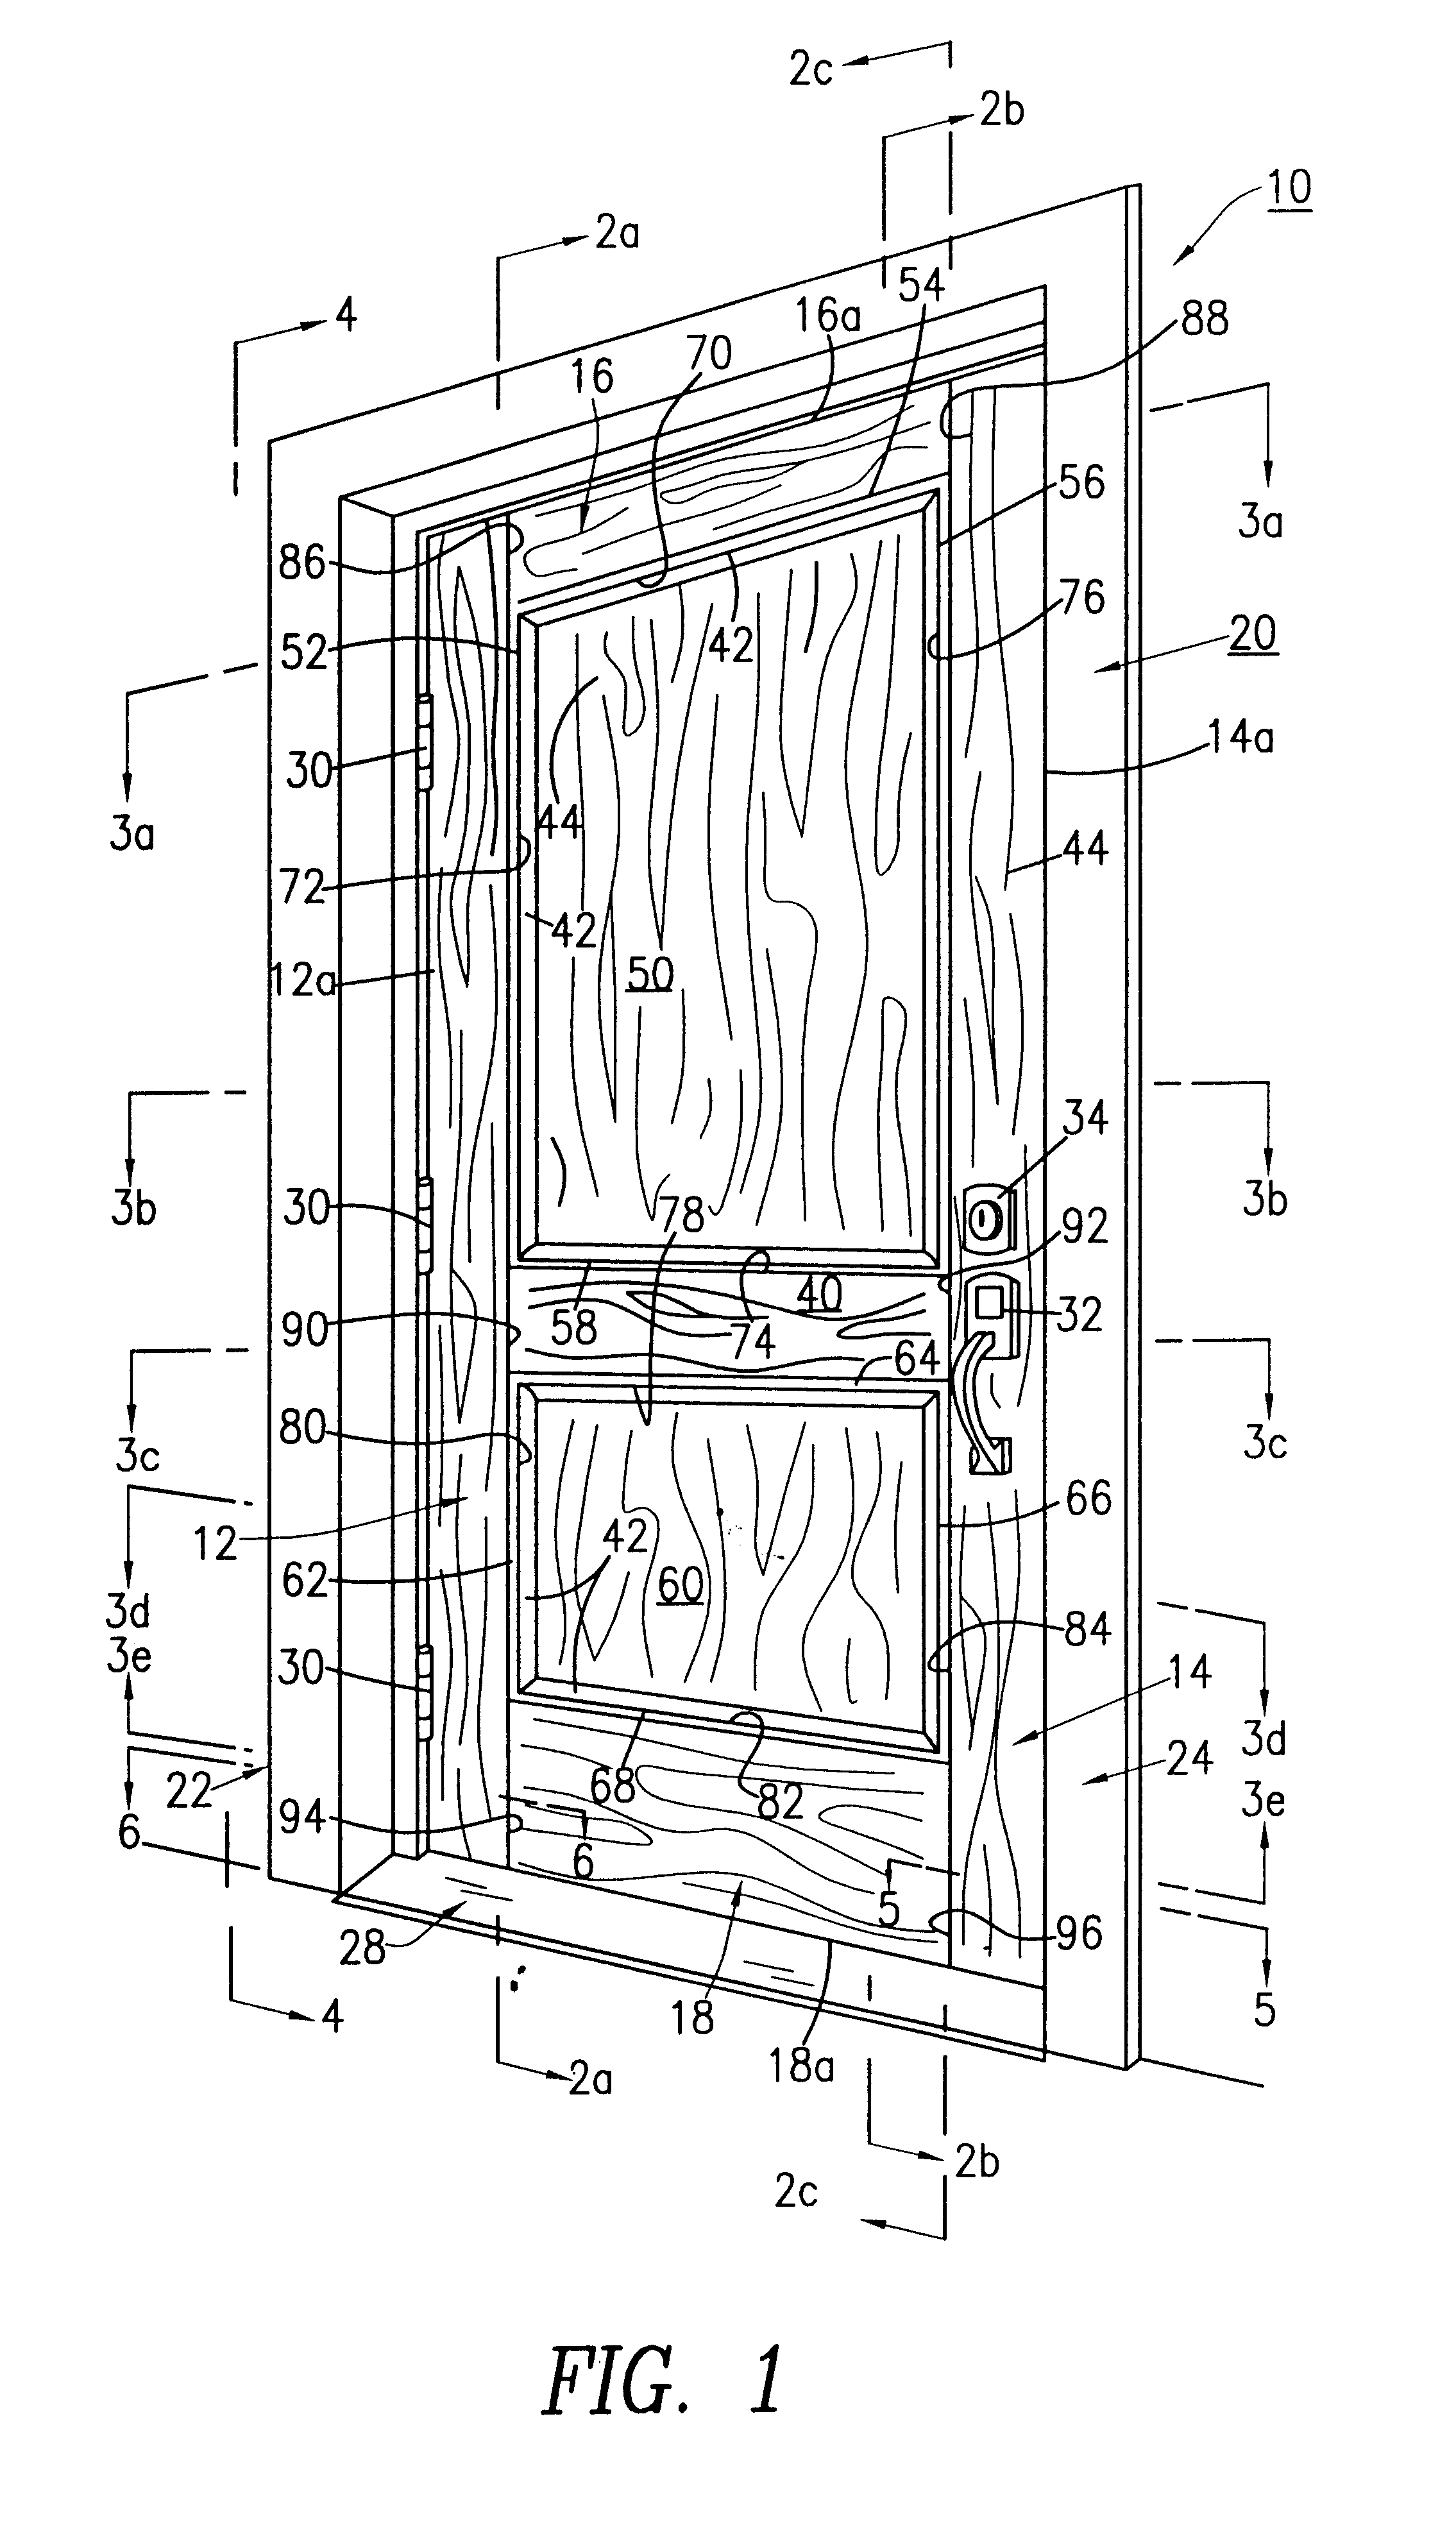 Fire retardant wooden door with intumescent materials